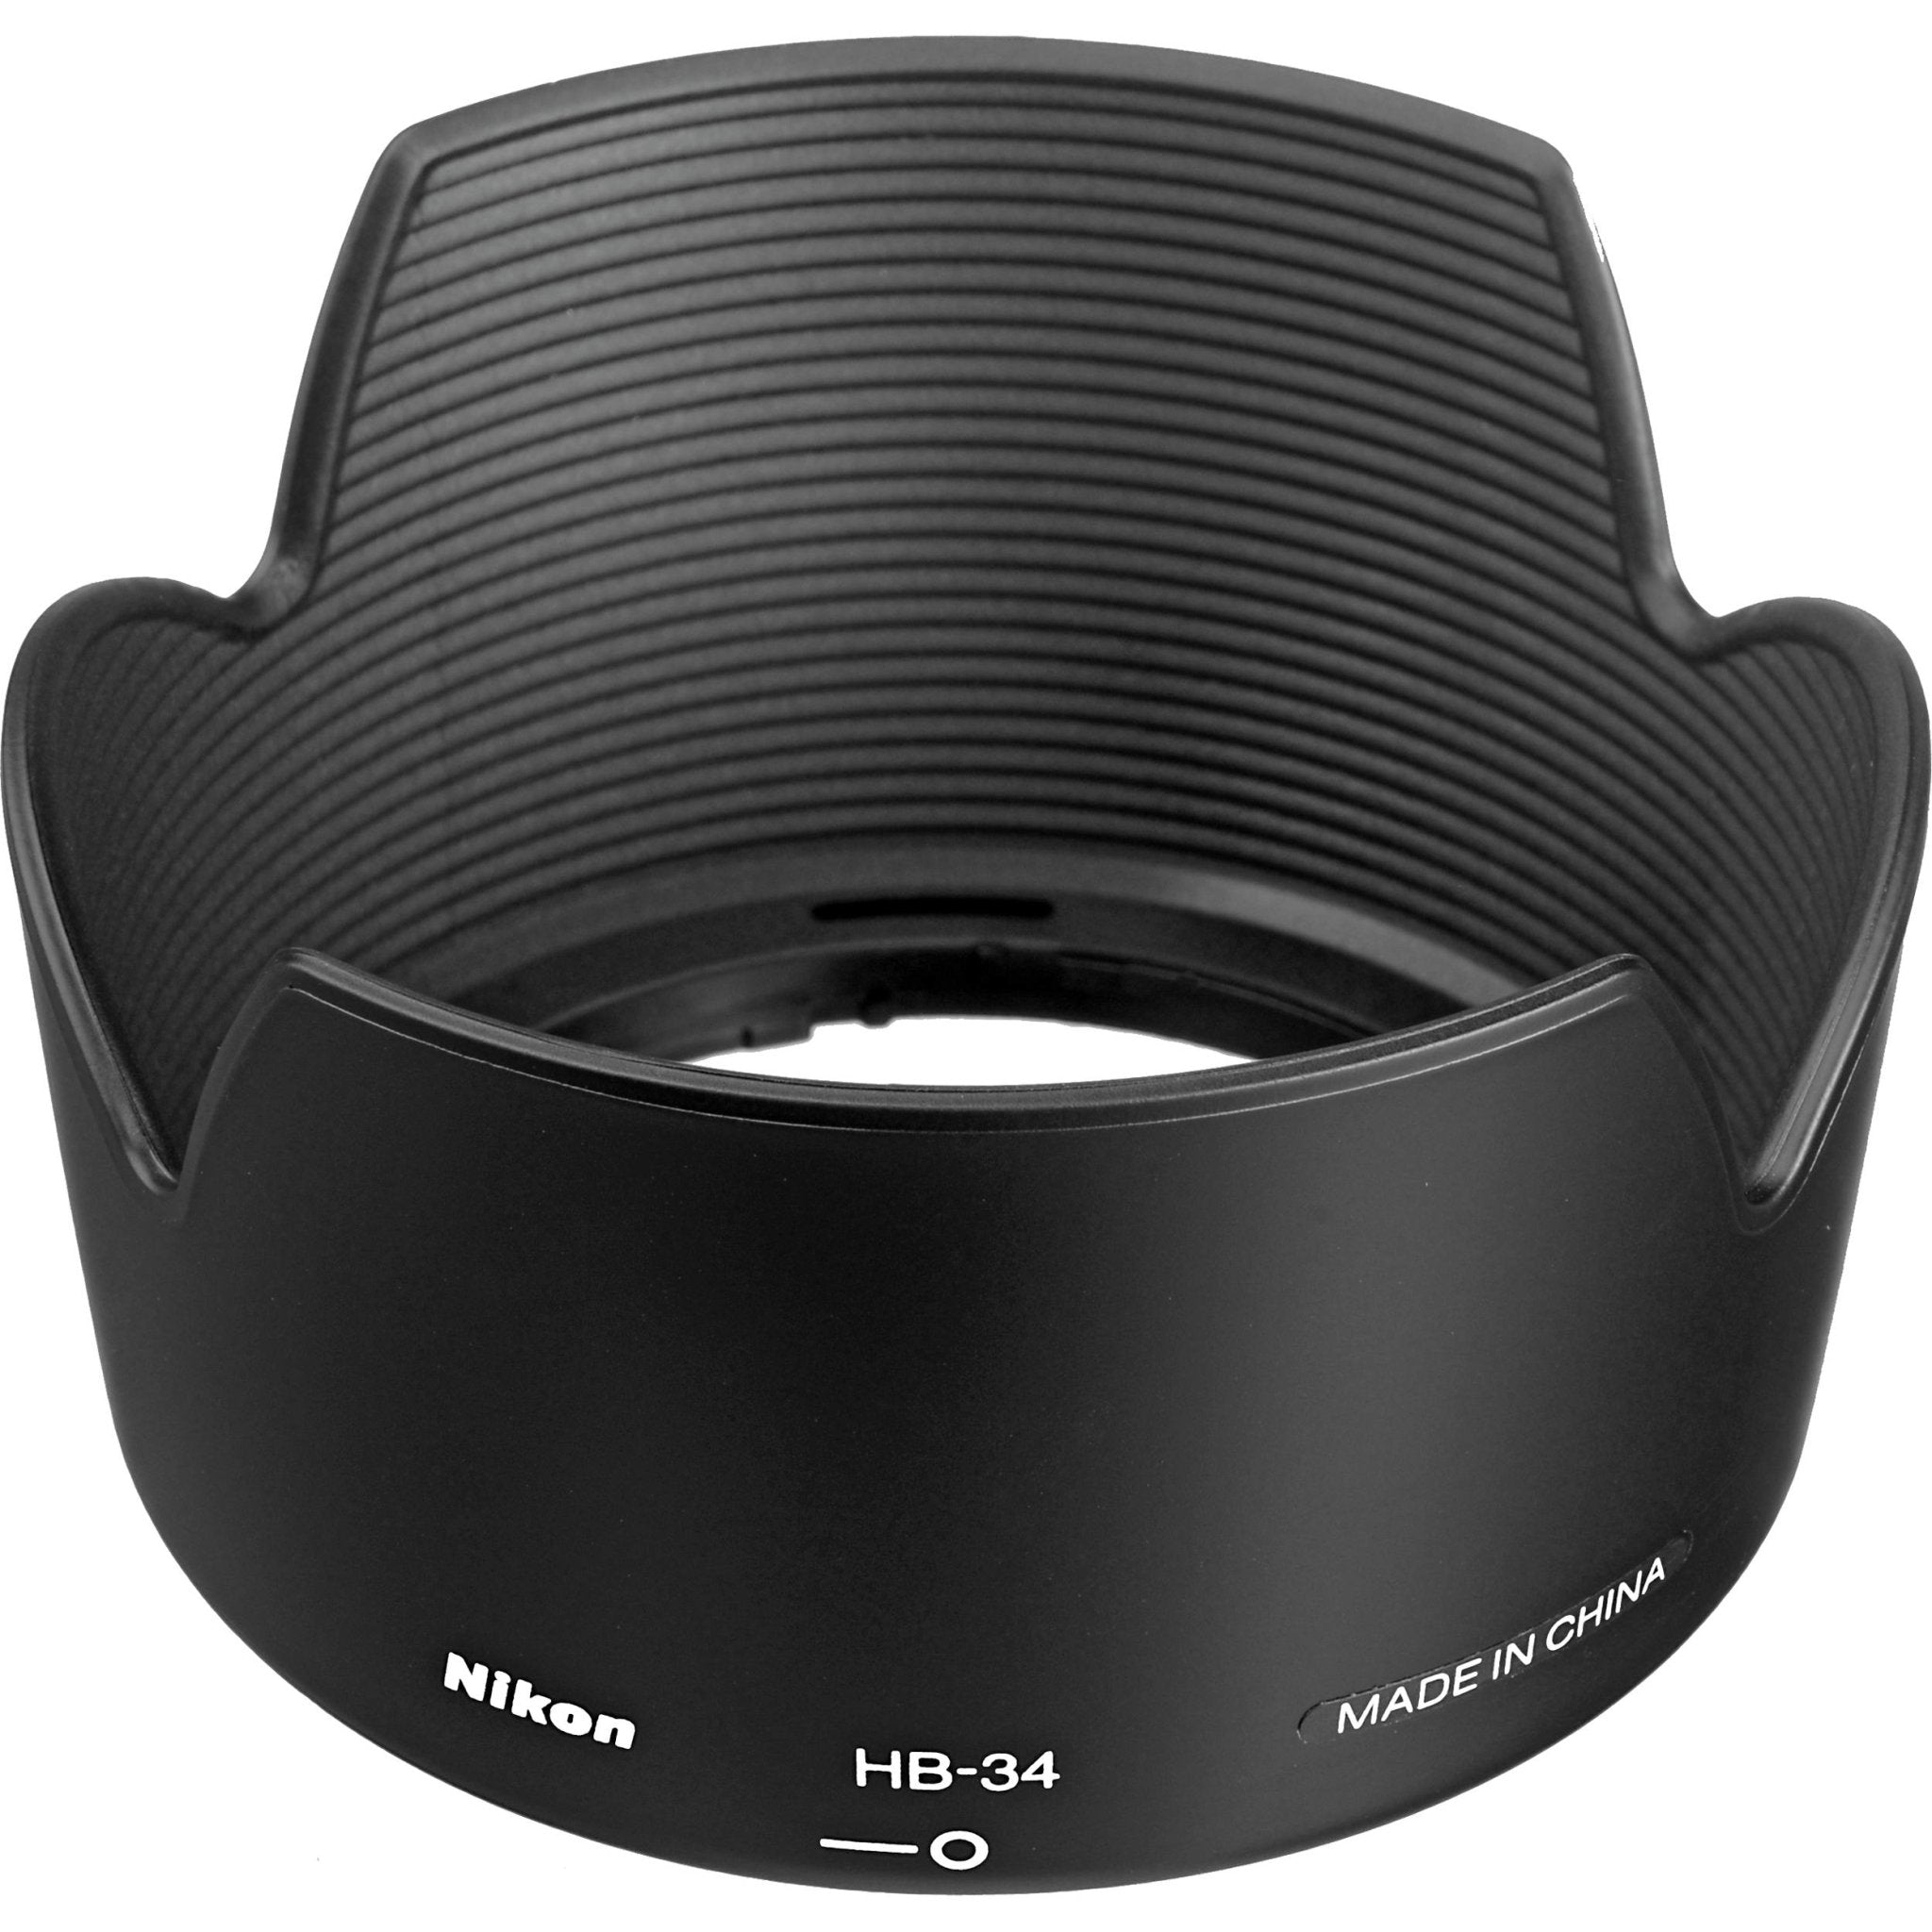 Nikon HB-34 Lens Hood For Nikon 55-200mm DX Lenses - The Camerashop